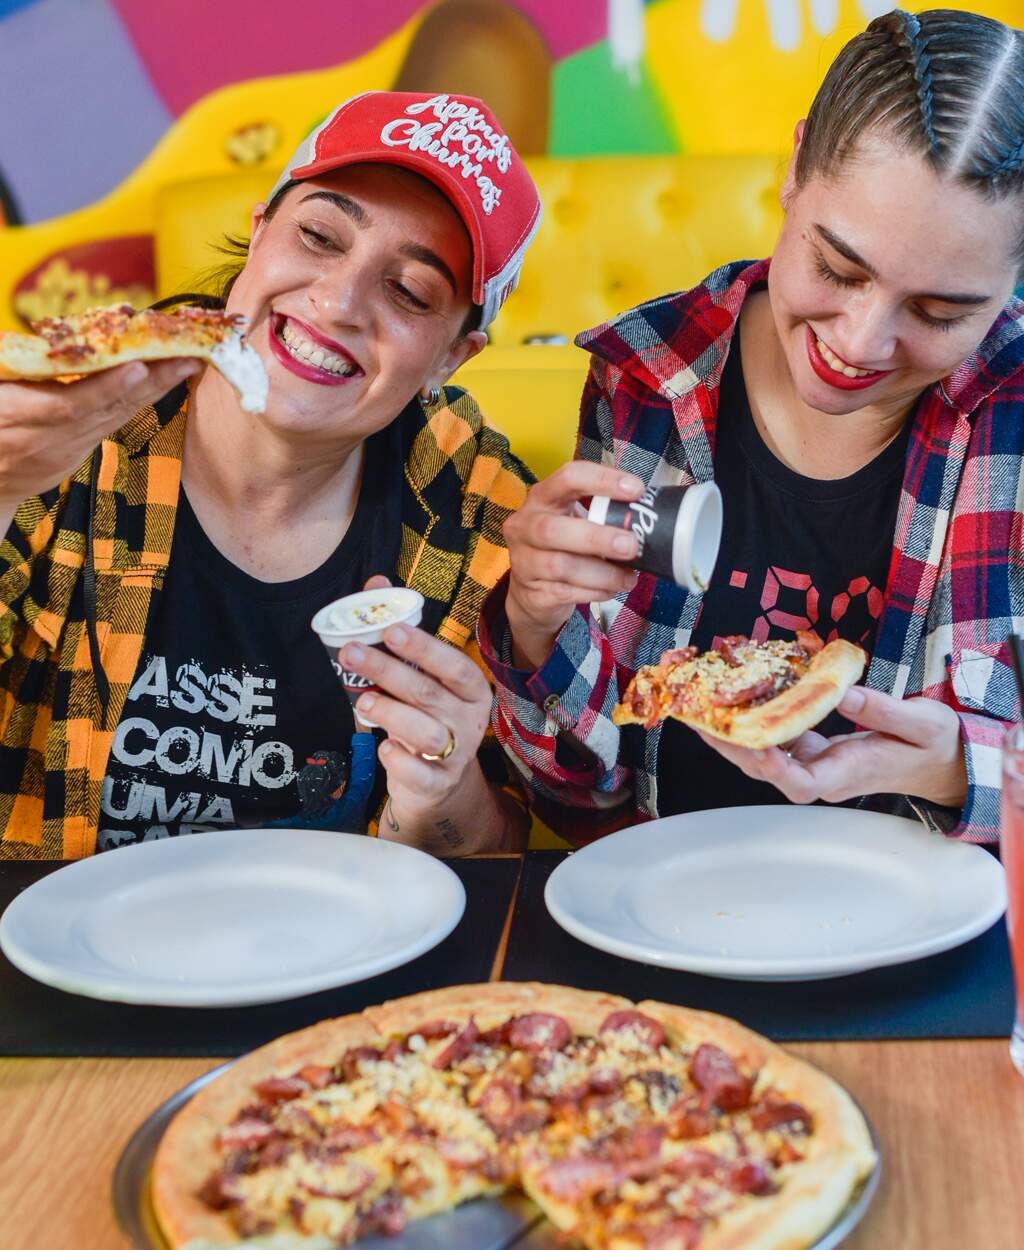 Super Pizza Pan - Pizzaria em Saúde